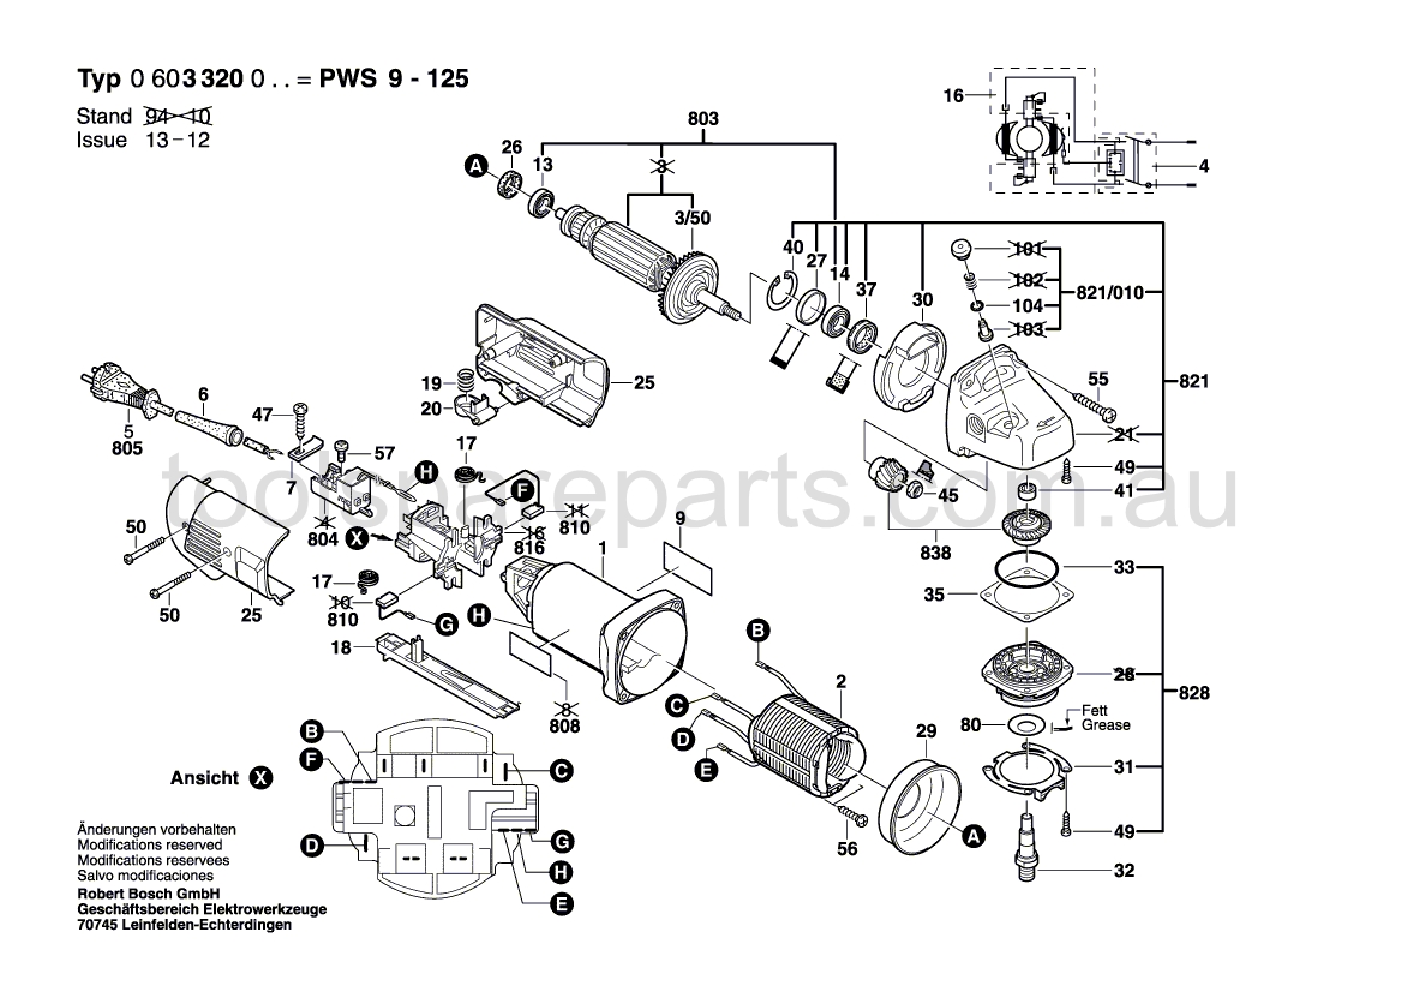 Bosch PWS 9-125 0603320037  Diagram 1